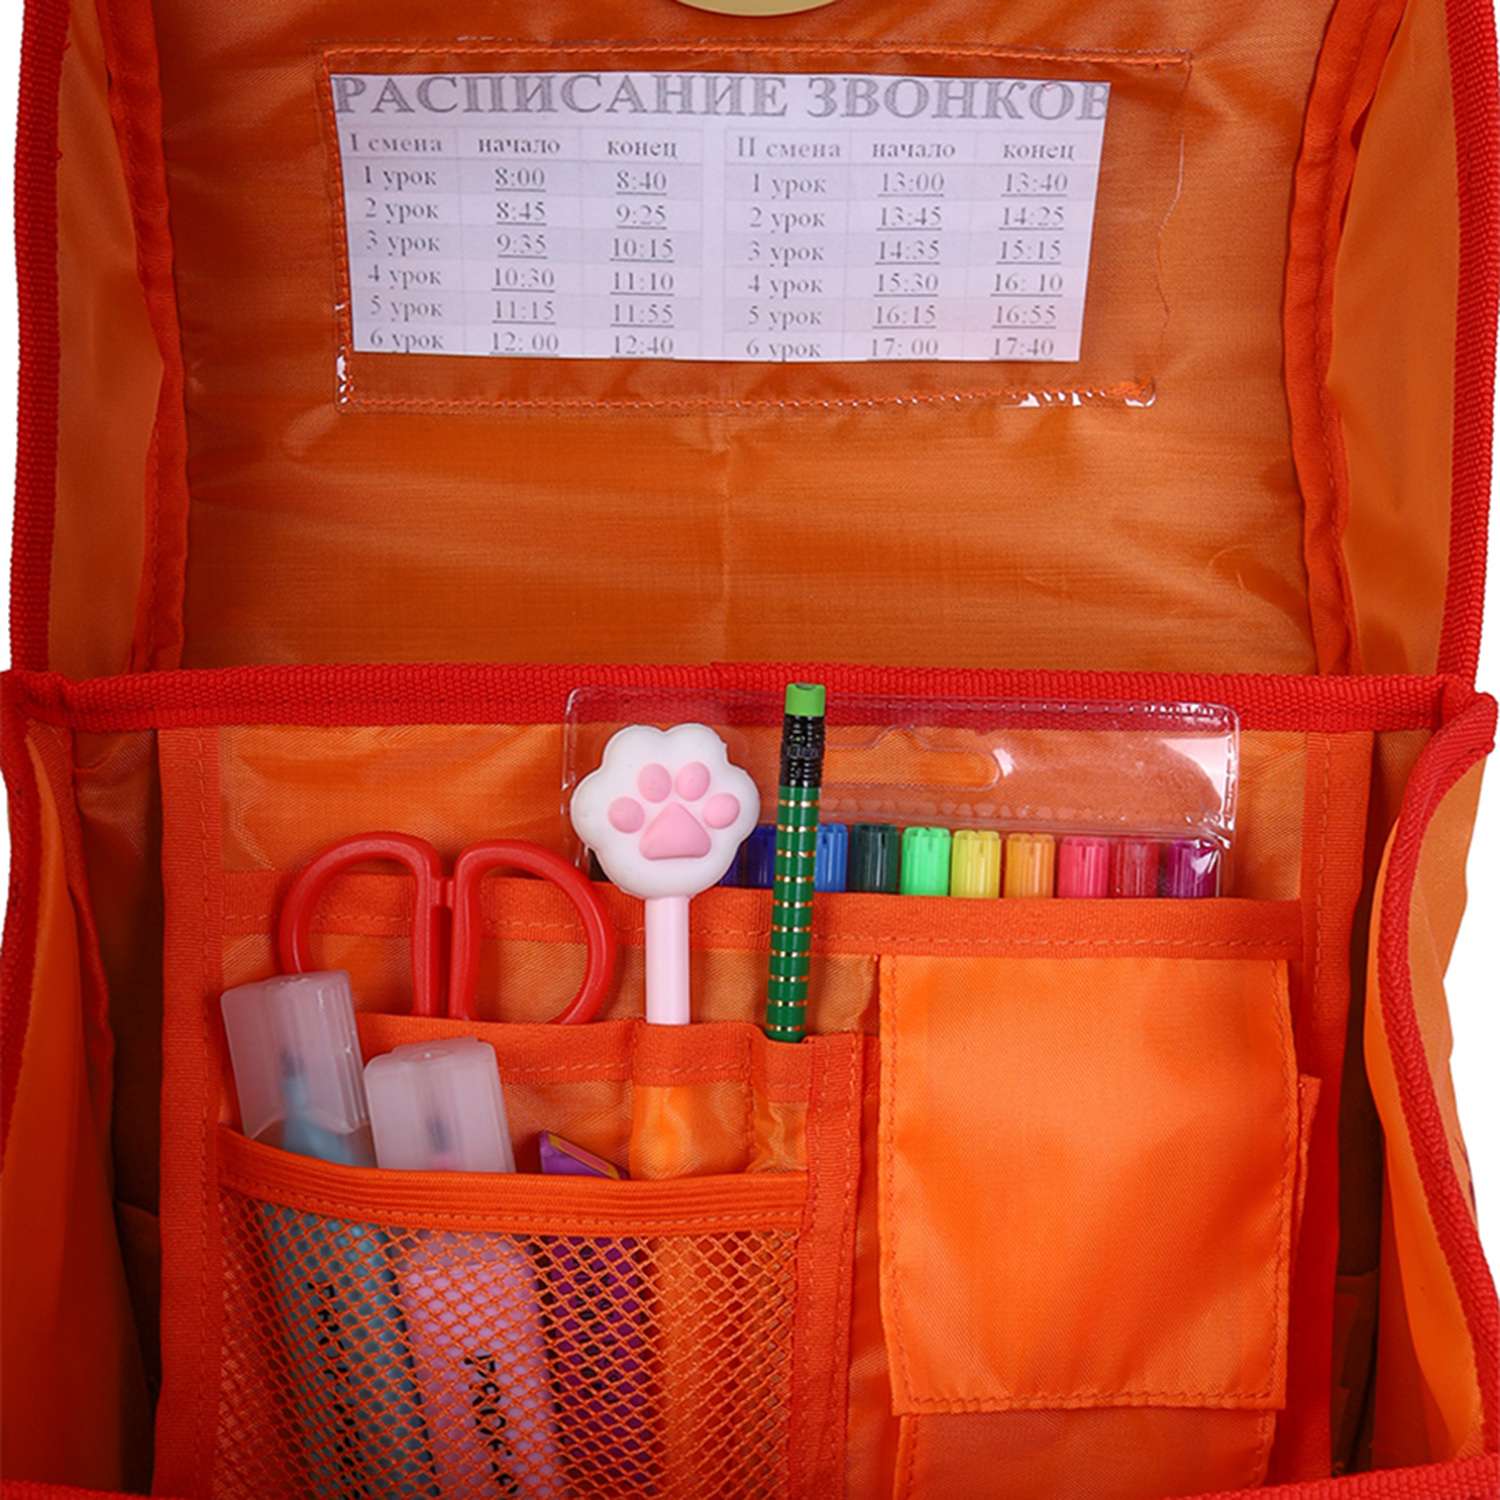 Эргономичный ранец Prof-Press Динокомпания 36х28х21 см облегченные материалы светоотражающие элементы - фото 8